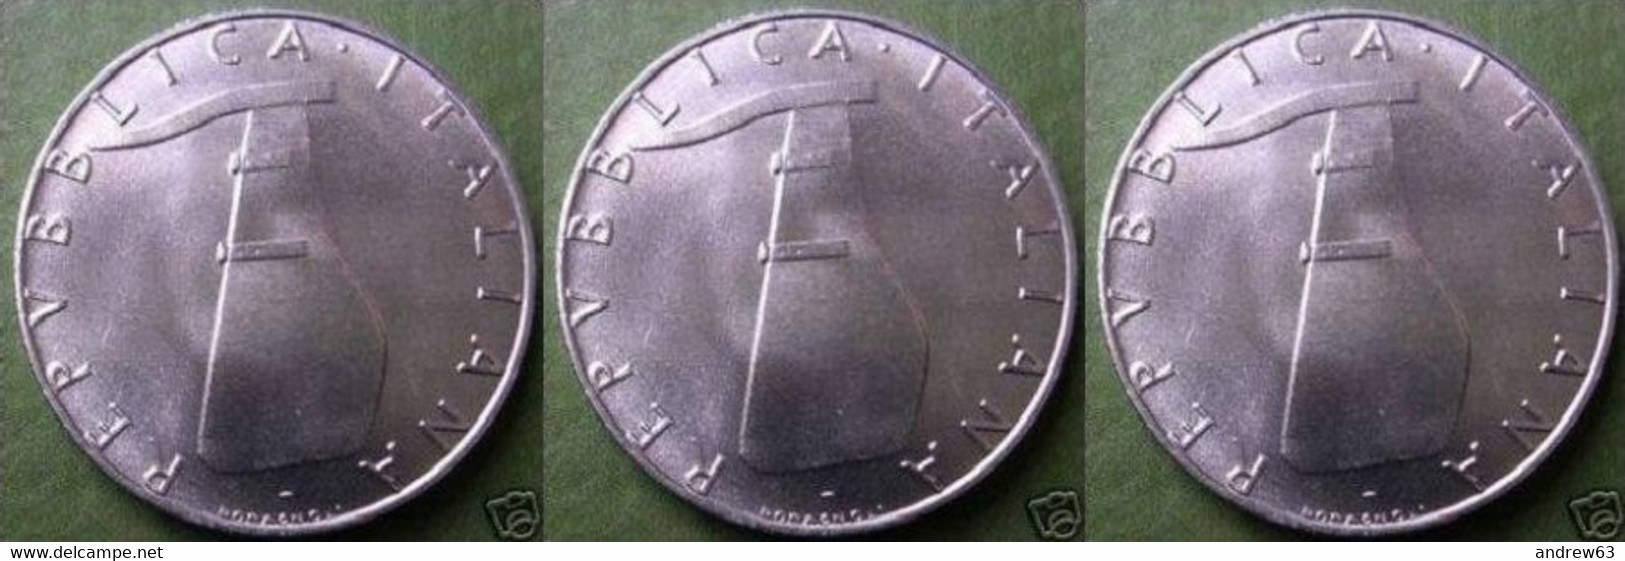 ITALIA - Lire 5 1988 - FDC/Unc Da Rotolino/from Roll 3 Monete/3 Coins - 5 Liras